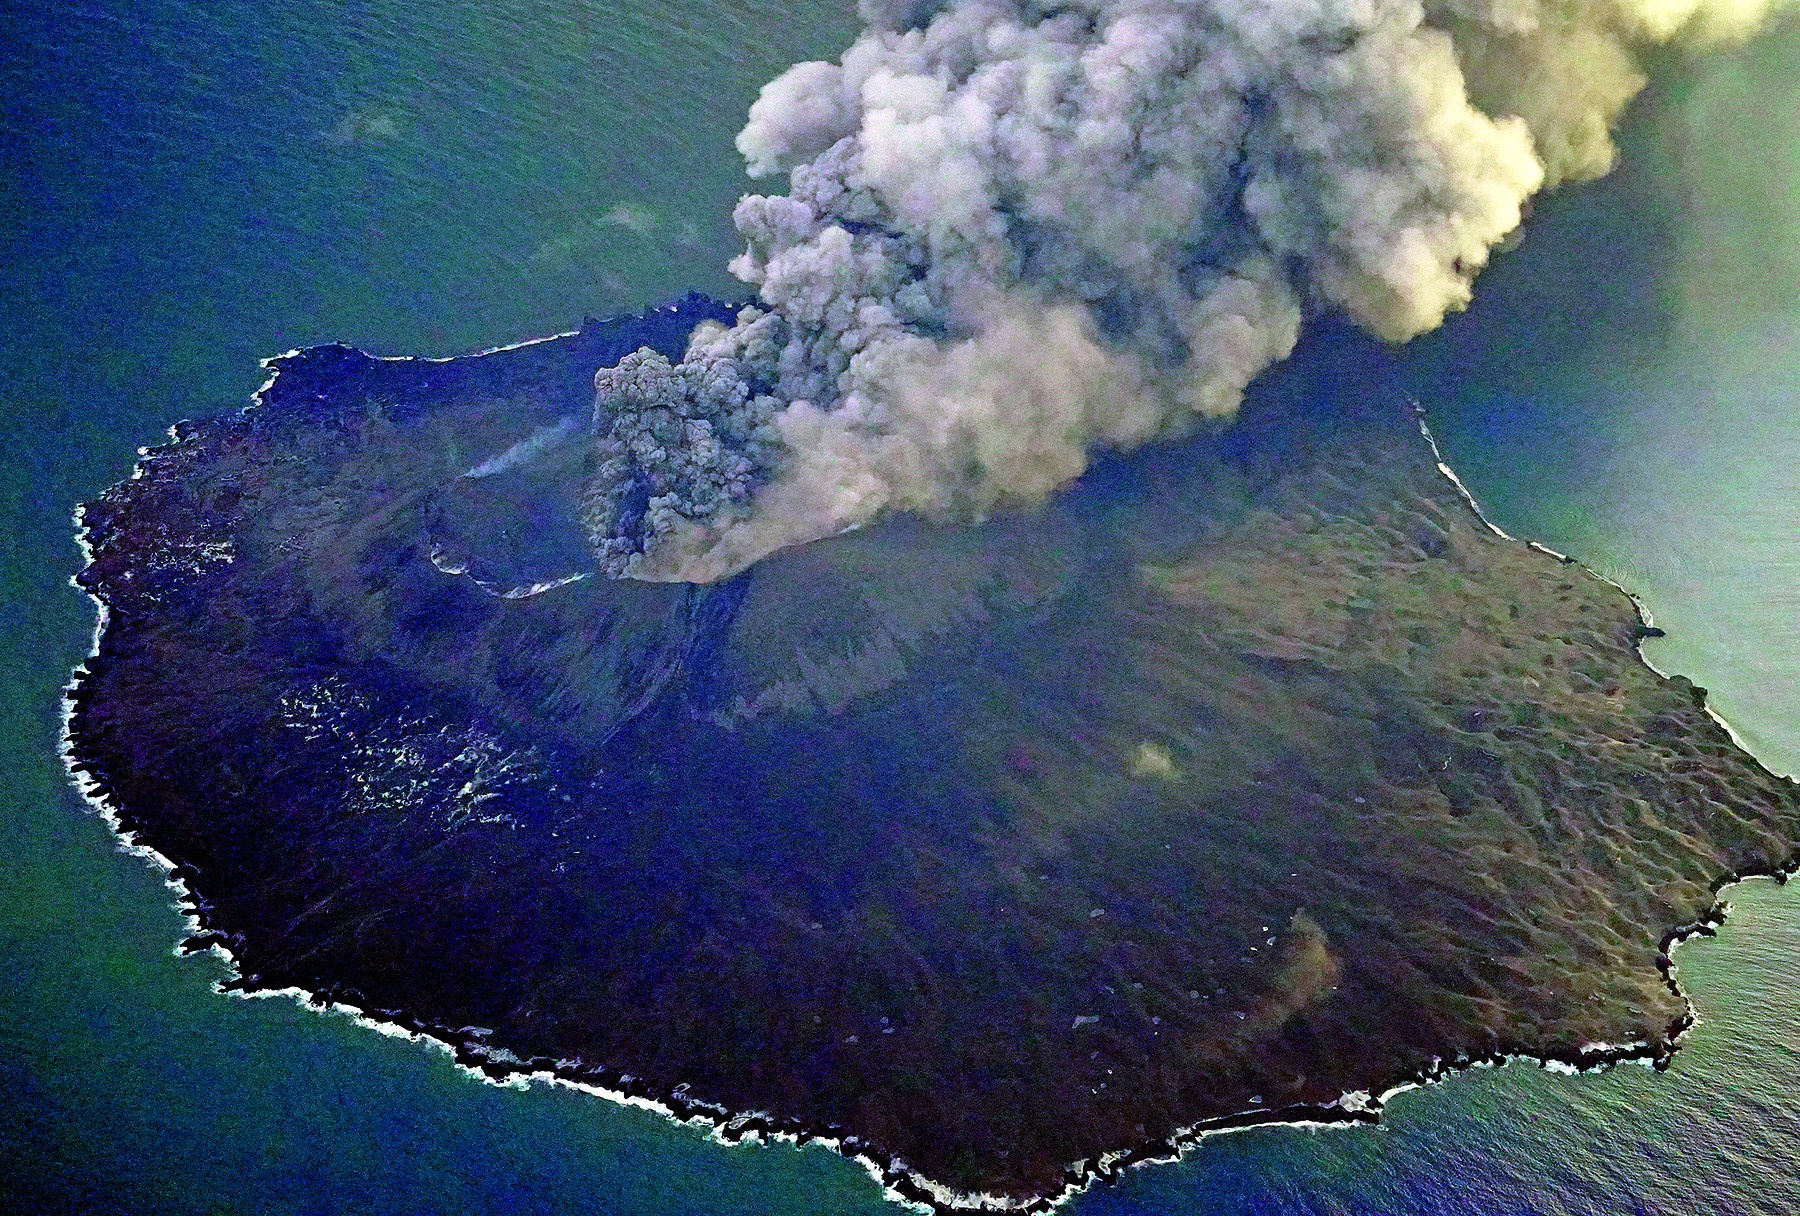 Fotografia. Vista aérea de uma ilha com um vulcão no centro, lançando fumaça densa na atmosfera. As vertentes do vulcão são cobertas por vegetação com folhagem escura. Ao redor da ilha, o mar.